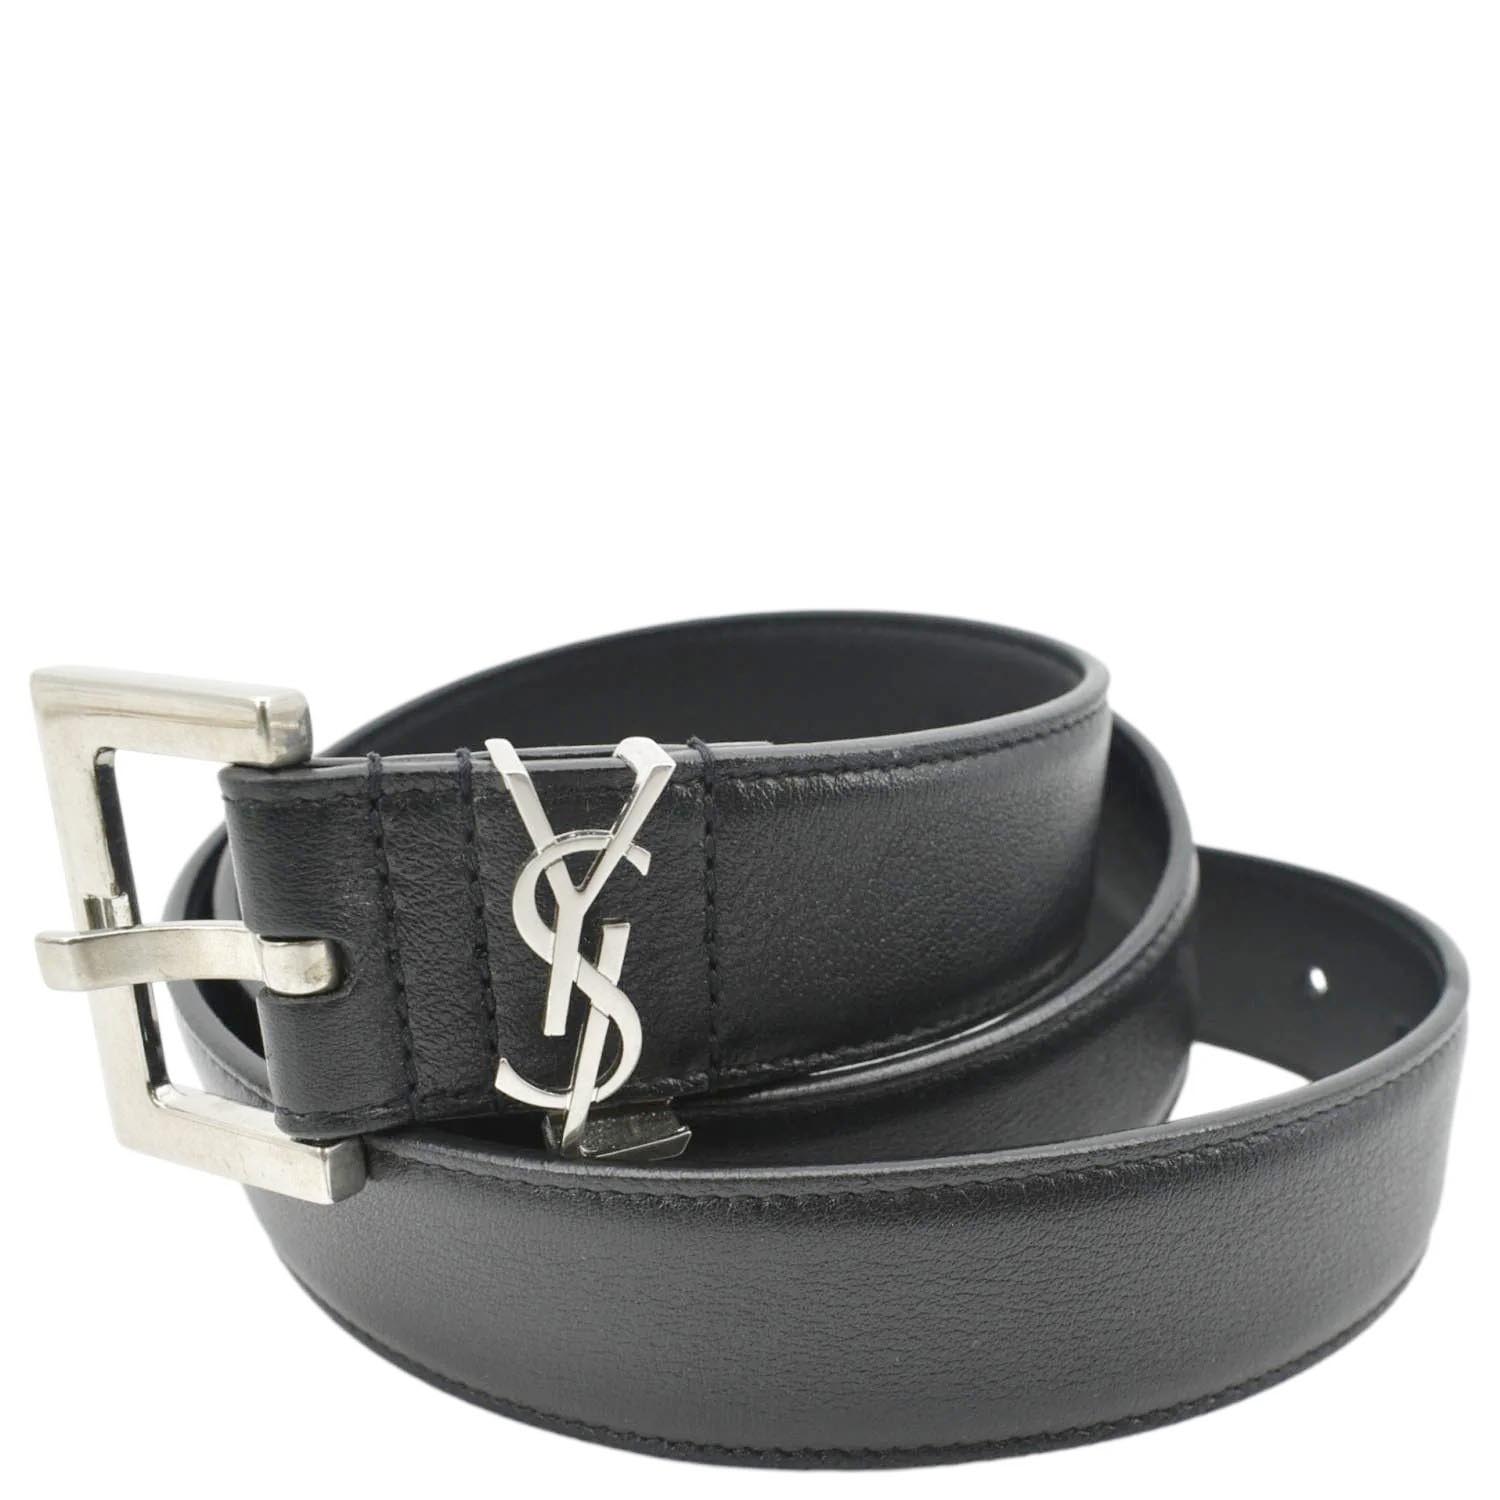 Saint Laurent Belts for Men, YSL Belts